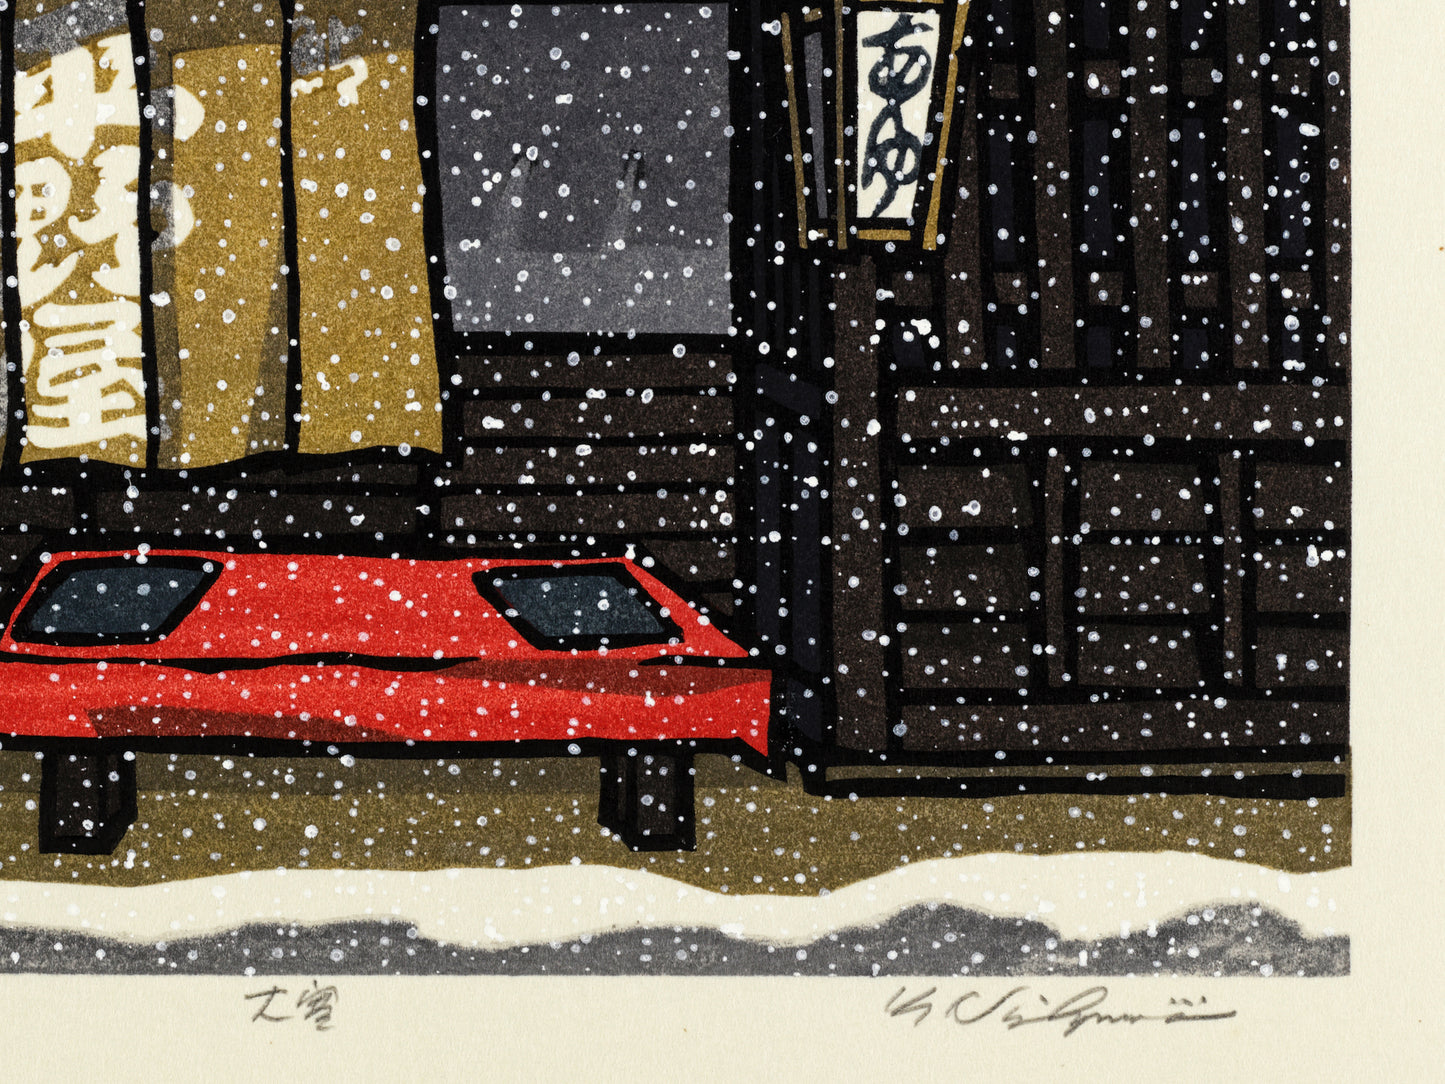 estampe japonaise contemporaine la neige tombe devant une boutique traditionnelle en bois à Kyoto, la signature de l'artiste Nishijima